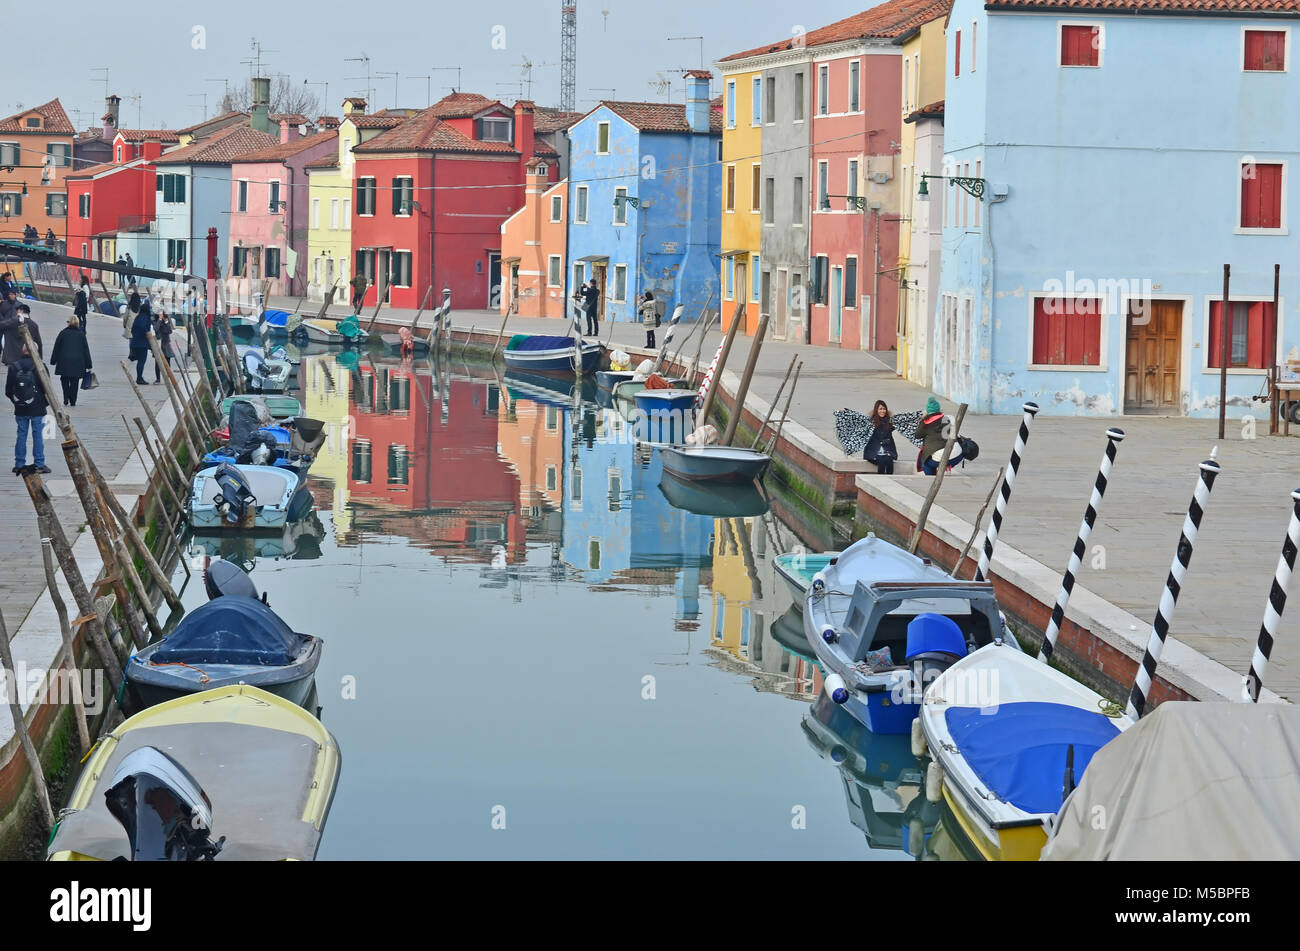 BURANO, ITALIEN - Januar 27: Touristen genießen die bunten Häuser entlang des Kanals auf der schönen Insel Burano: Januar 27, 2016 in Burano, Italien Stockfoto